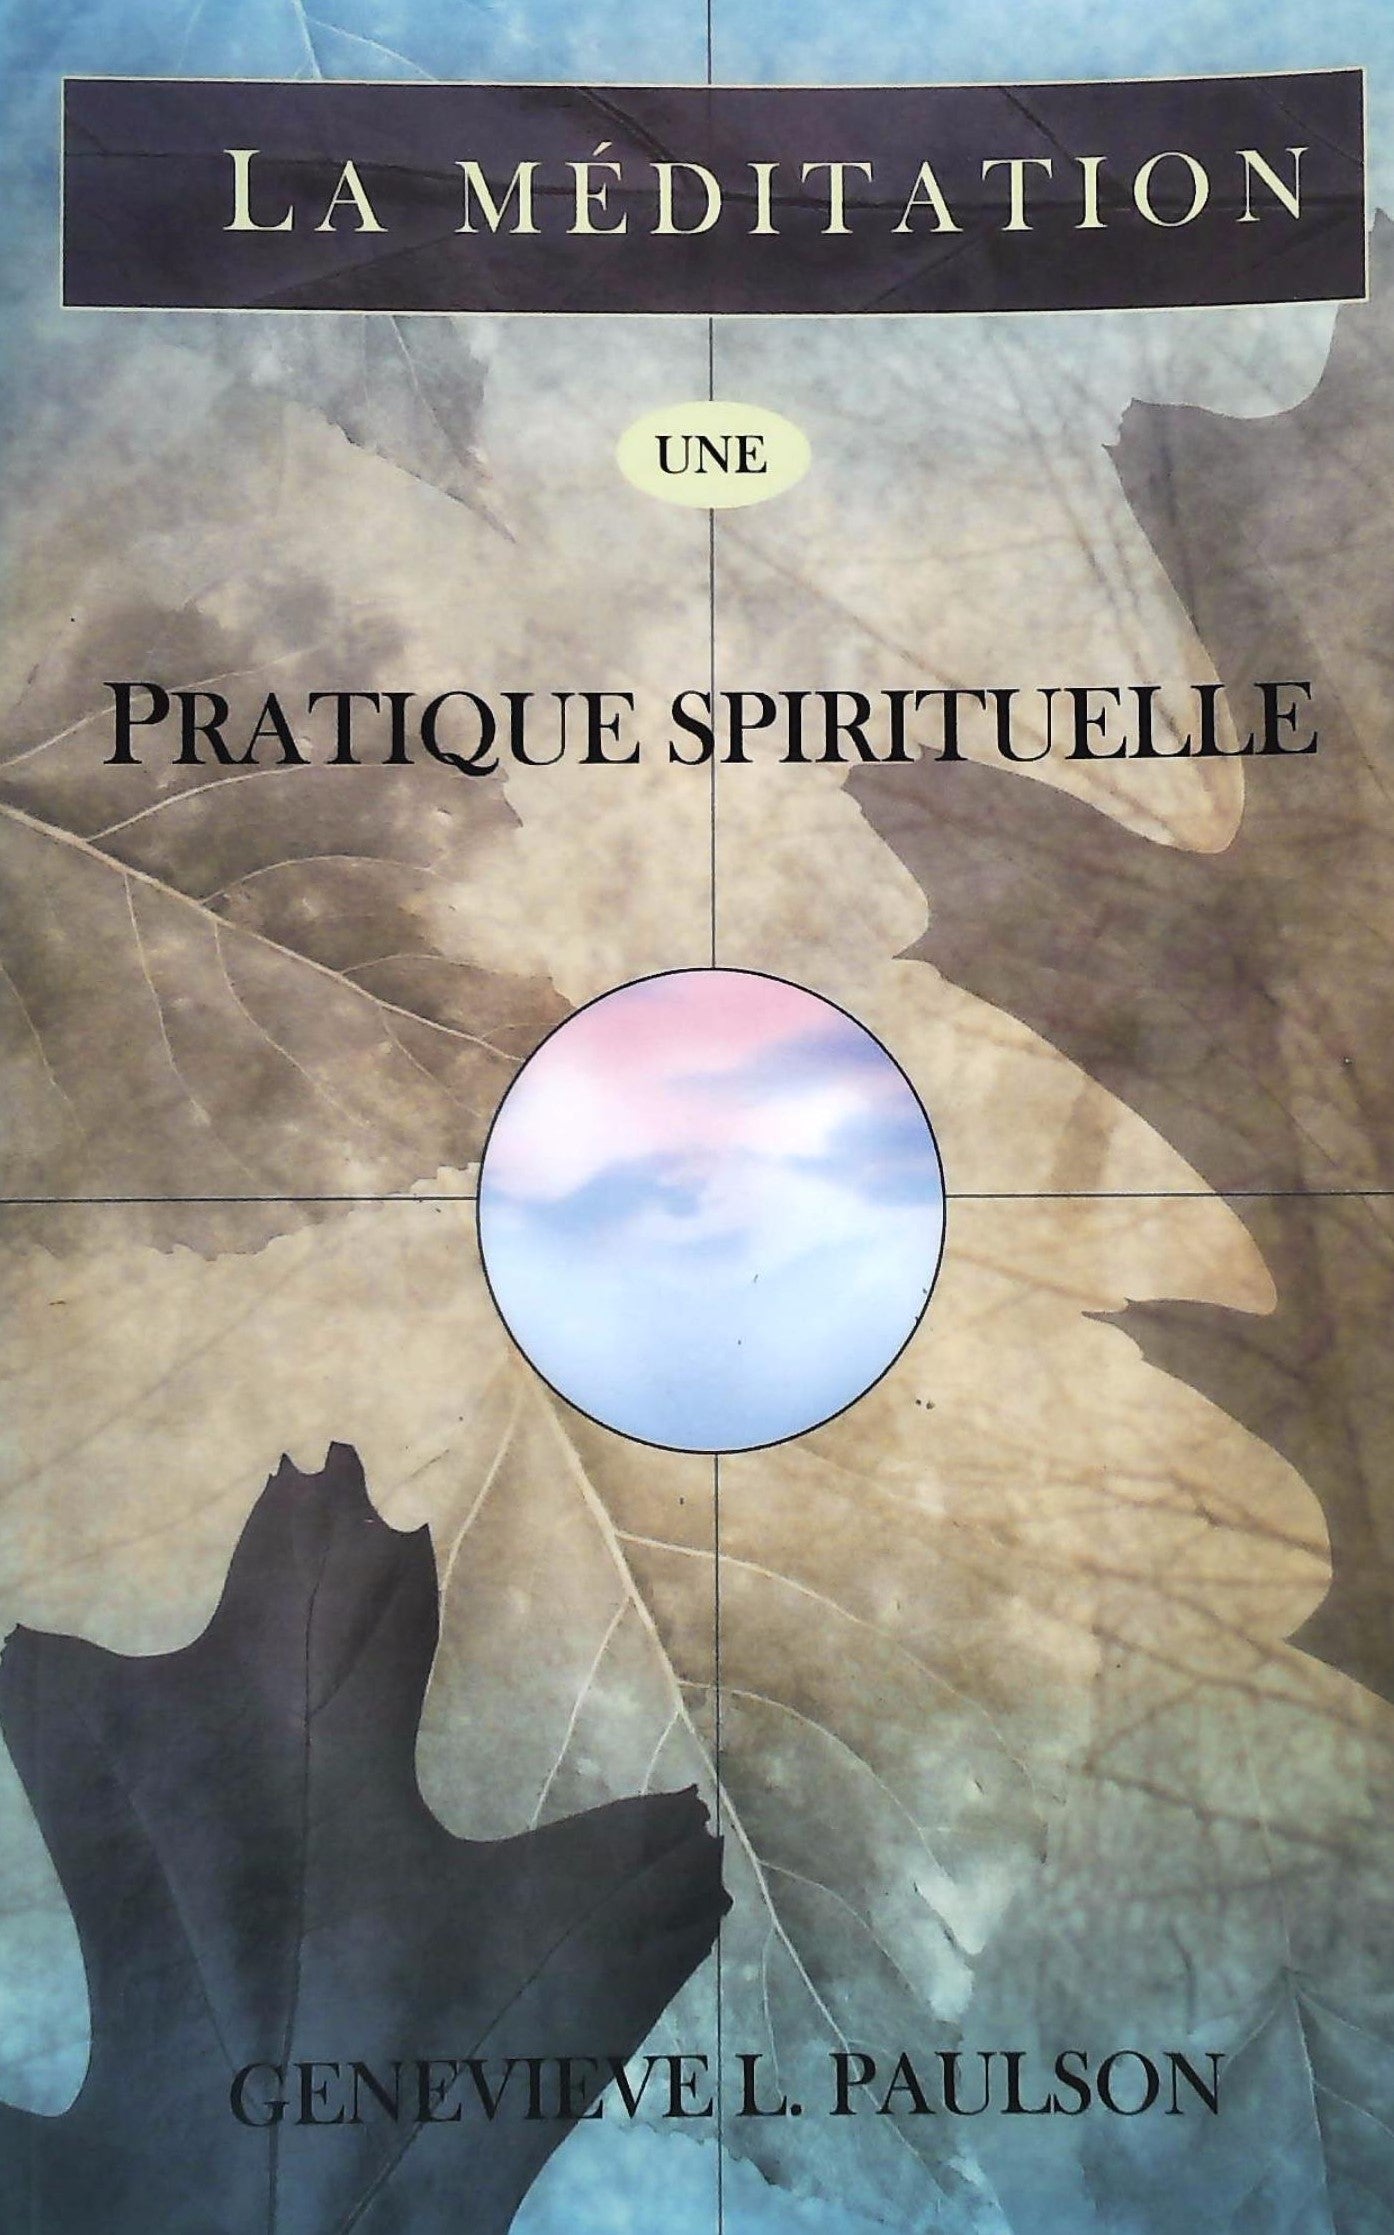 Livre ISBN 2895655006 La méditation une pratique spirituelle (Genevieve L. Paulson)